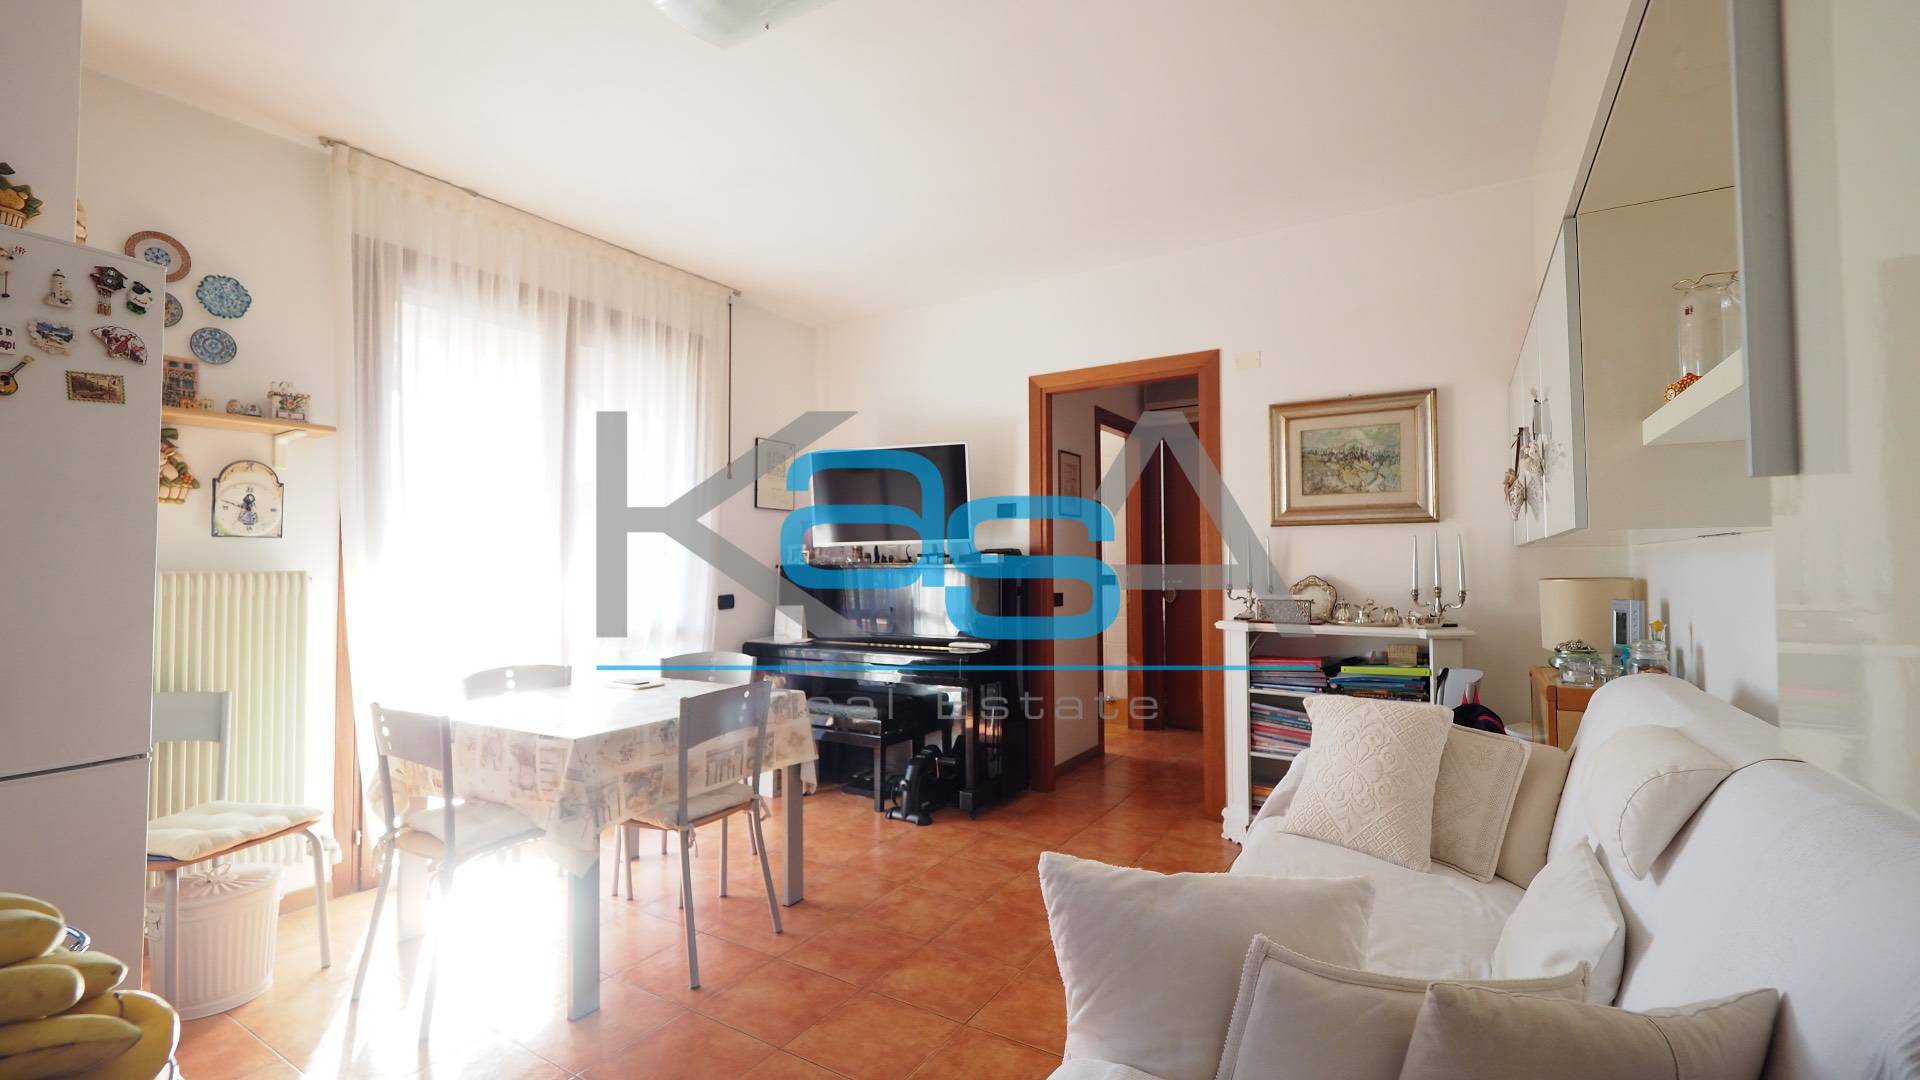 Appartamento in vendita a Casale sul Sile, 3 locali, prezzo € 110.000 | CambioCasa.it